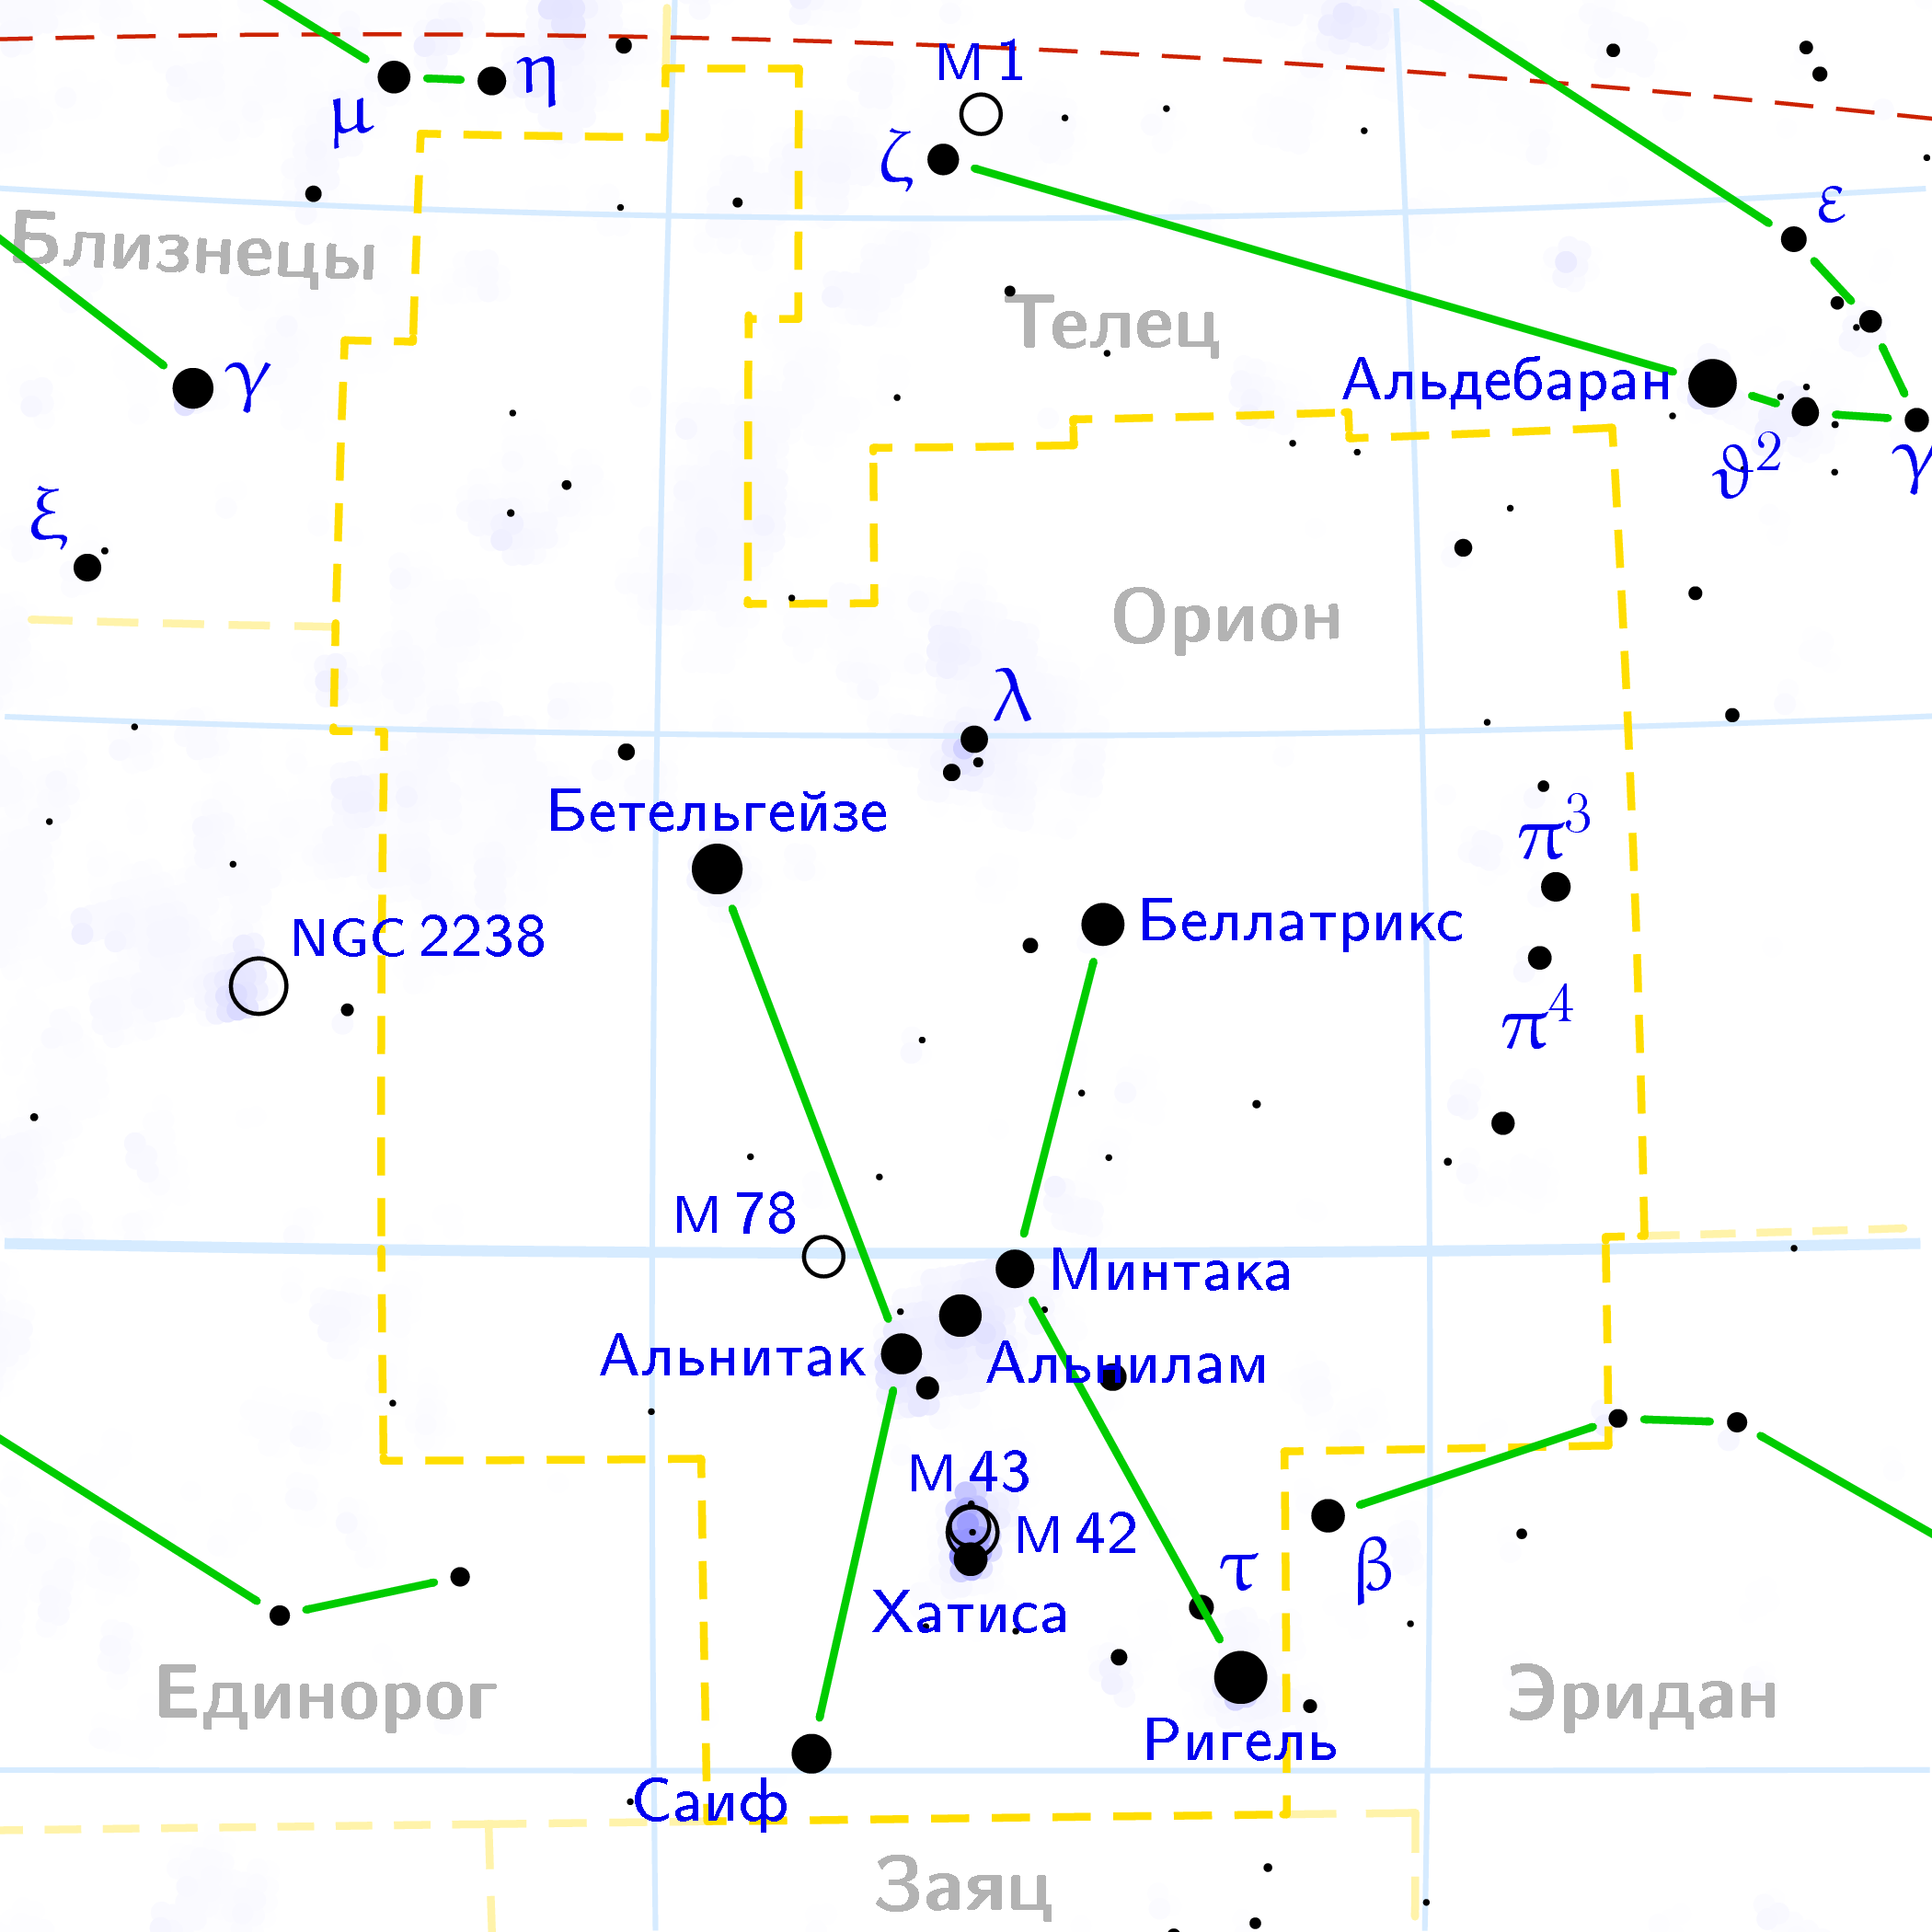 Пояс Ориона Созвездие схема